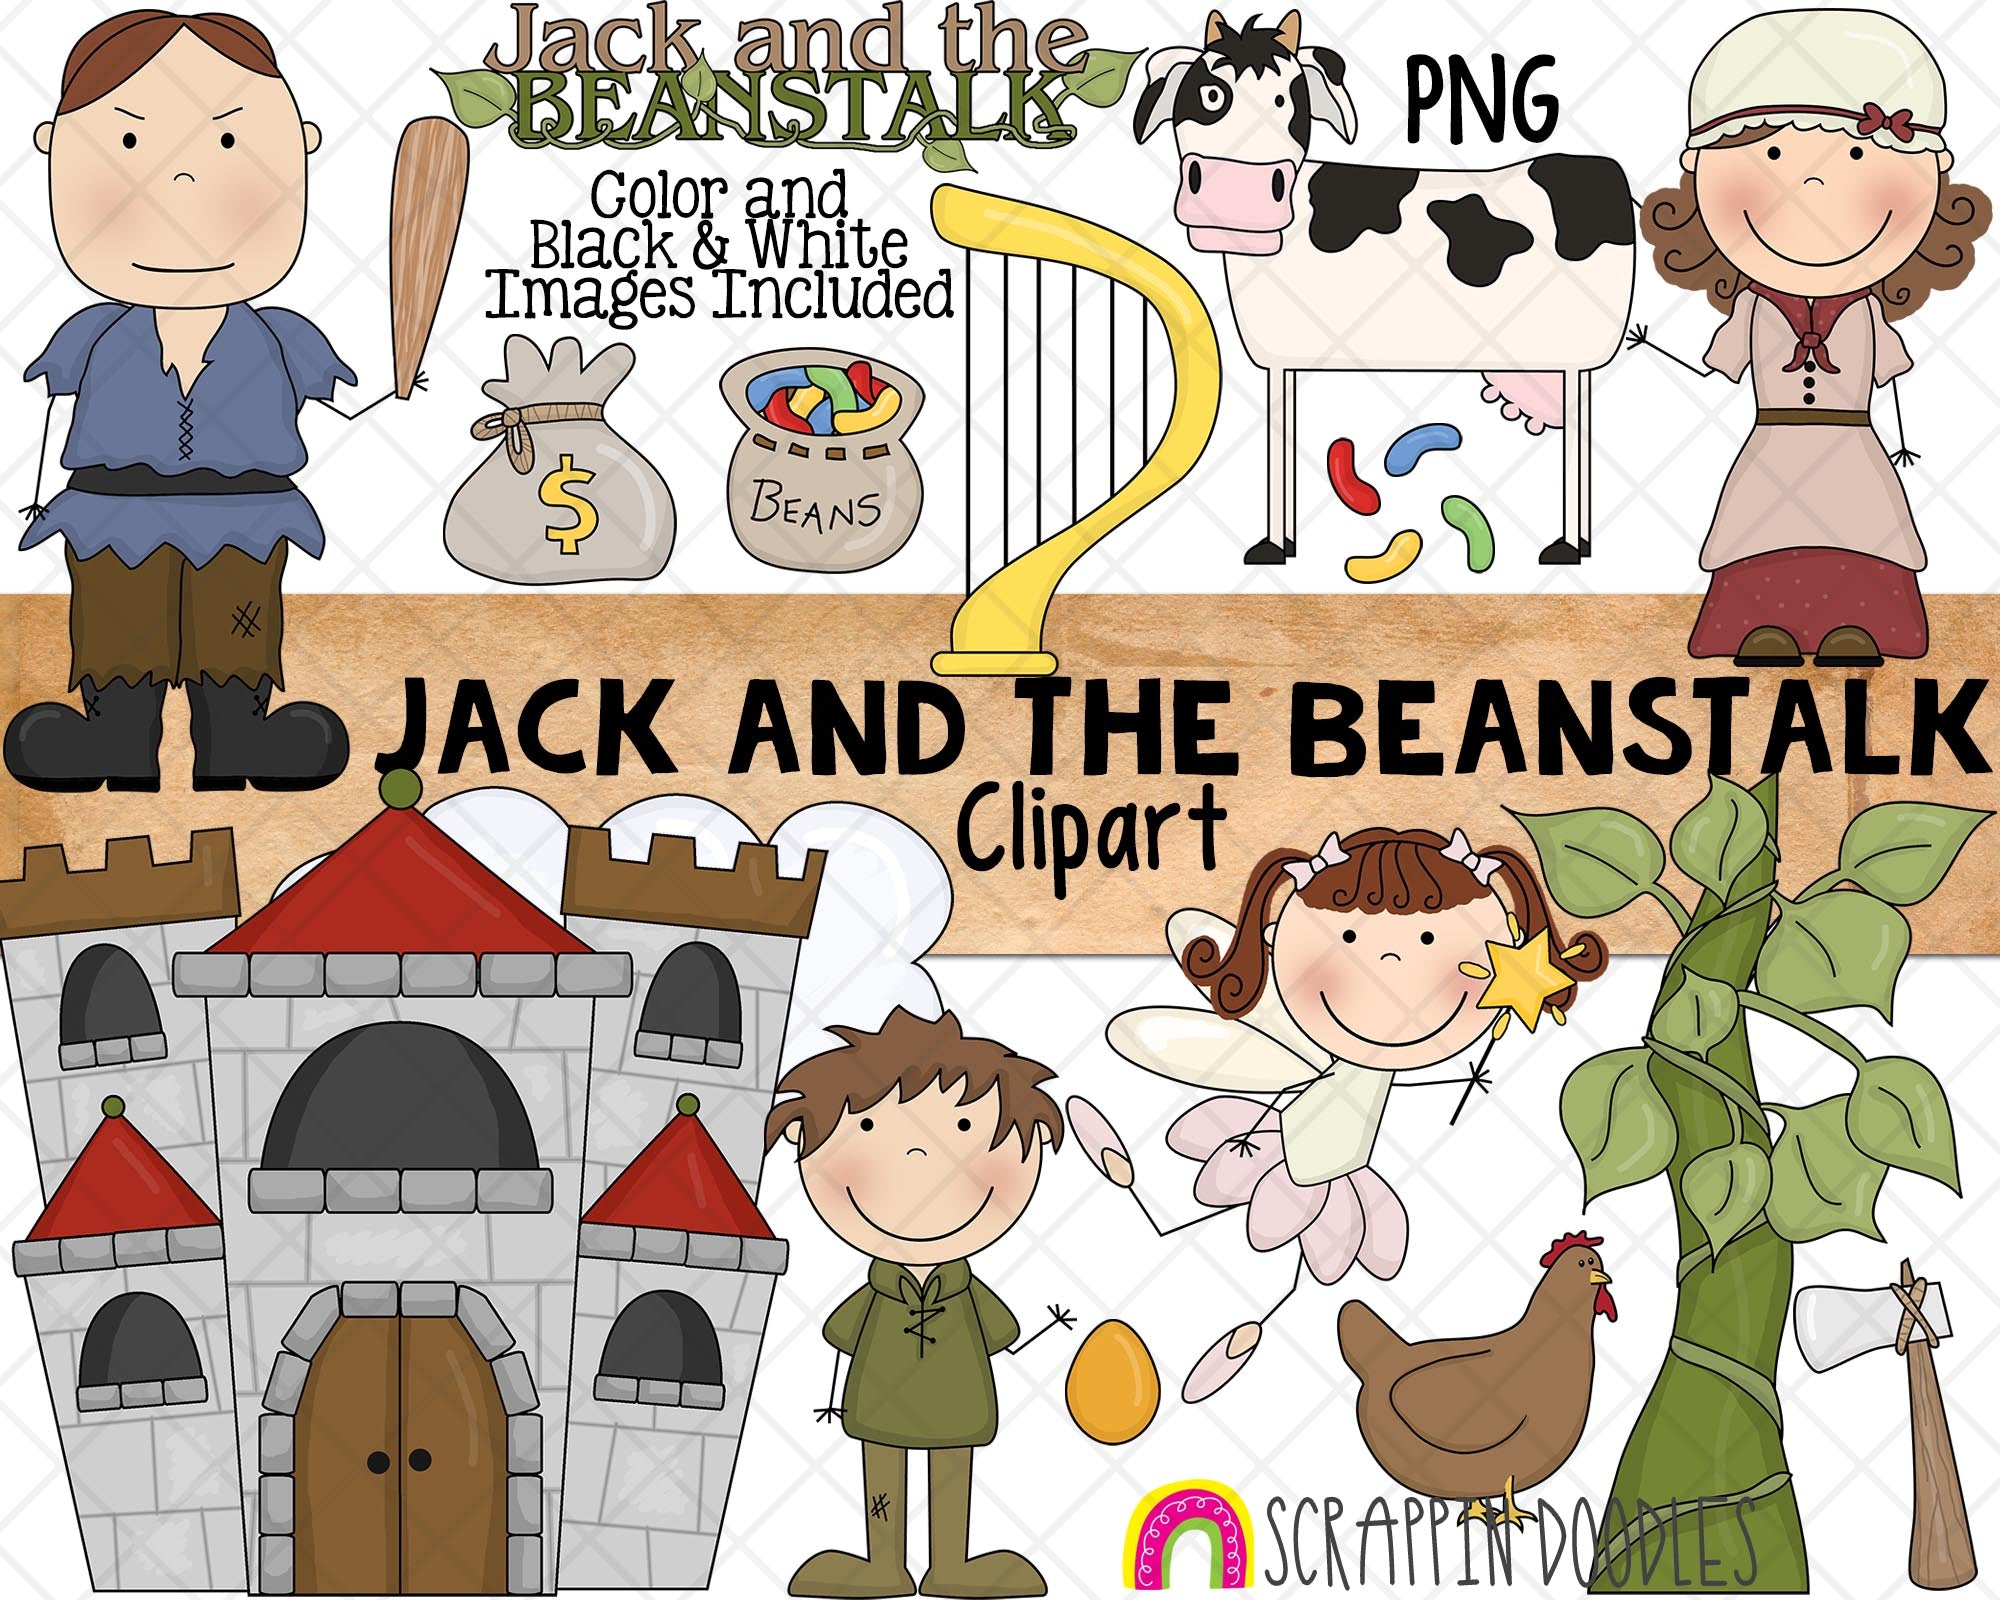 Jack and the Beanstalk ClipArt - Nursery Rhyme - Fairy Tale